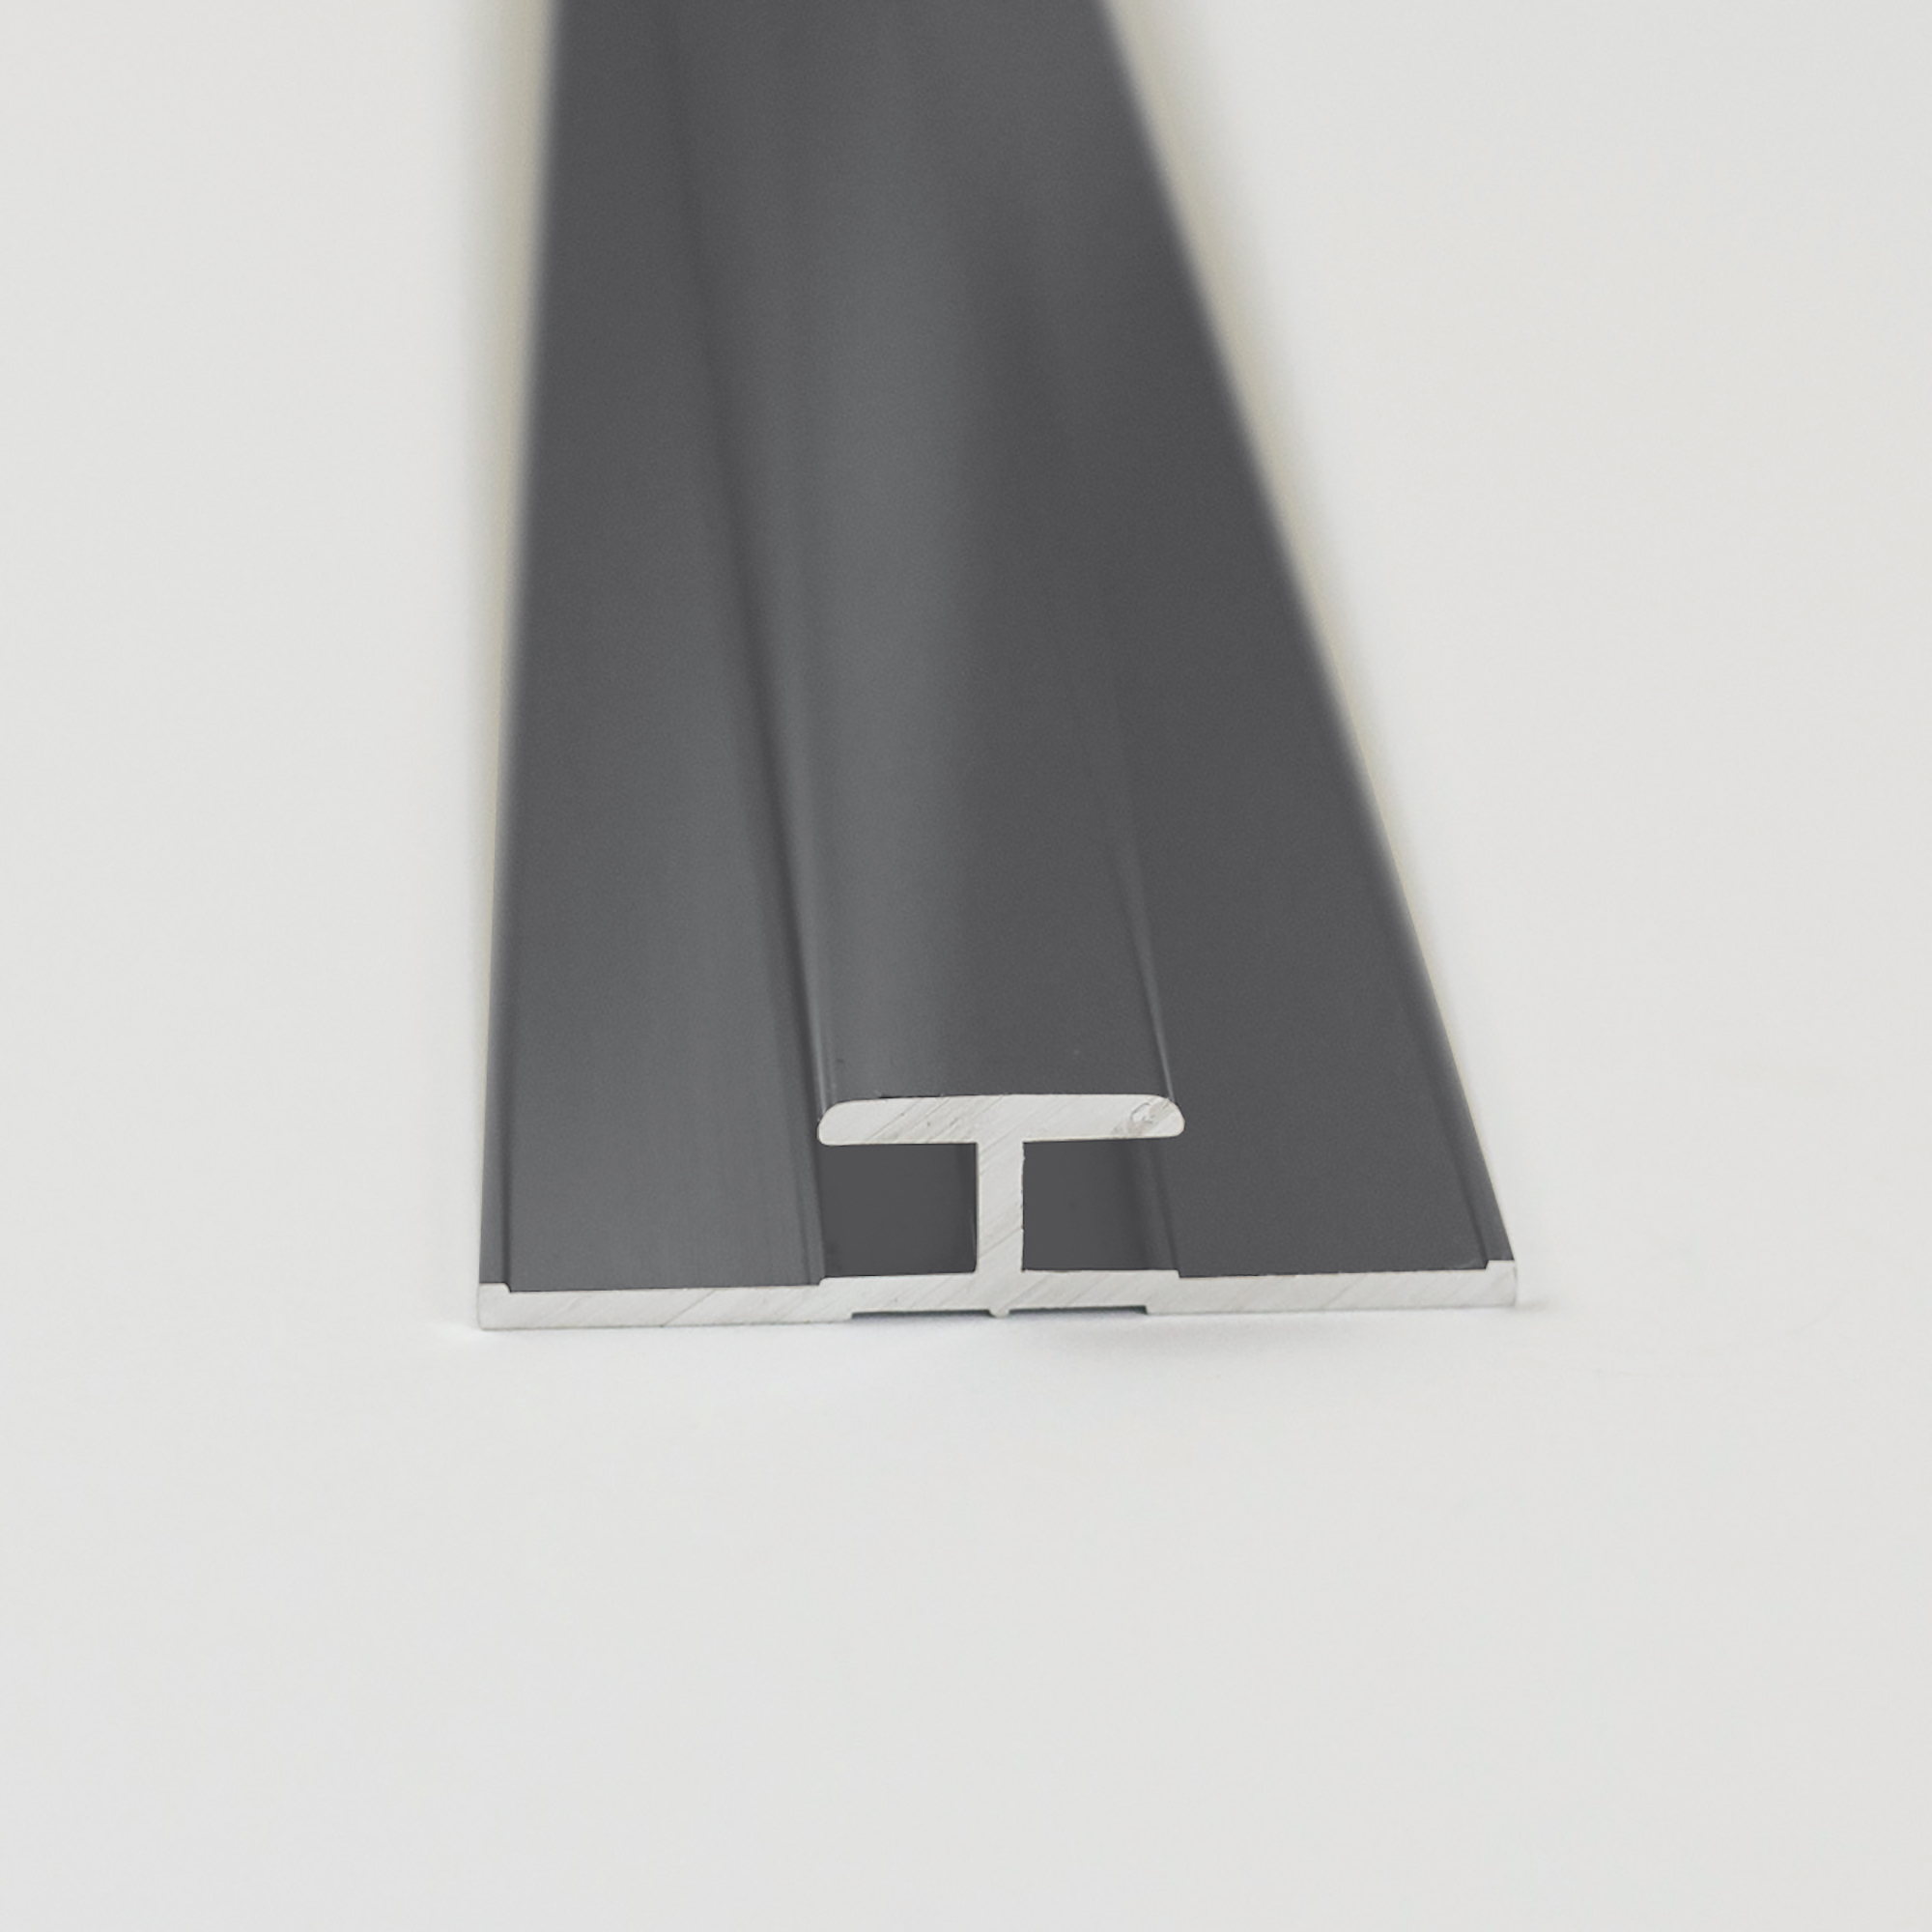 Verbindungsprofil für Rückwandplatten, anthrazitgrau, 2100 mm + product picture